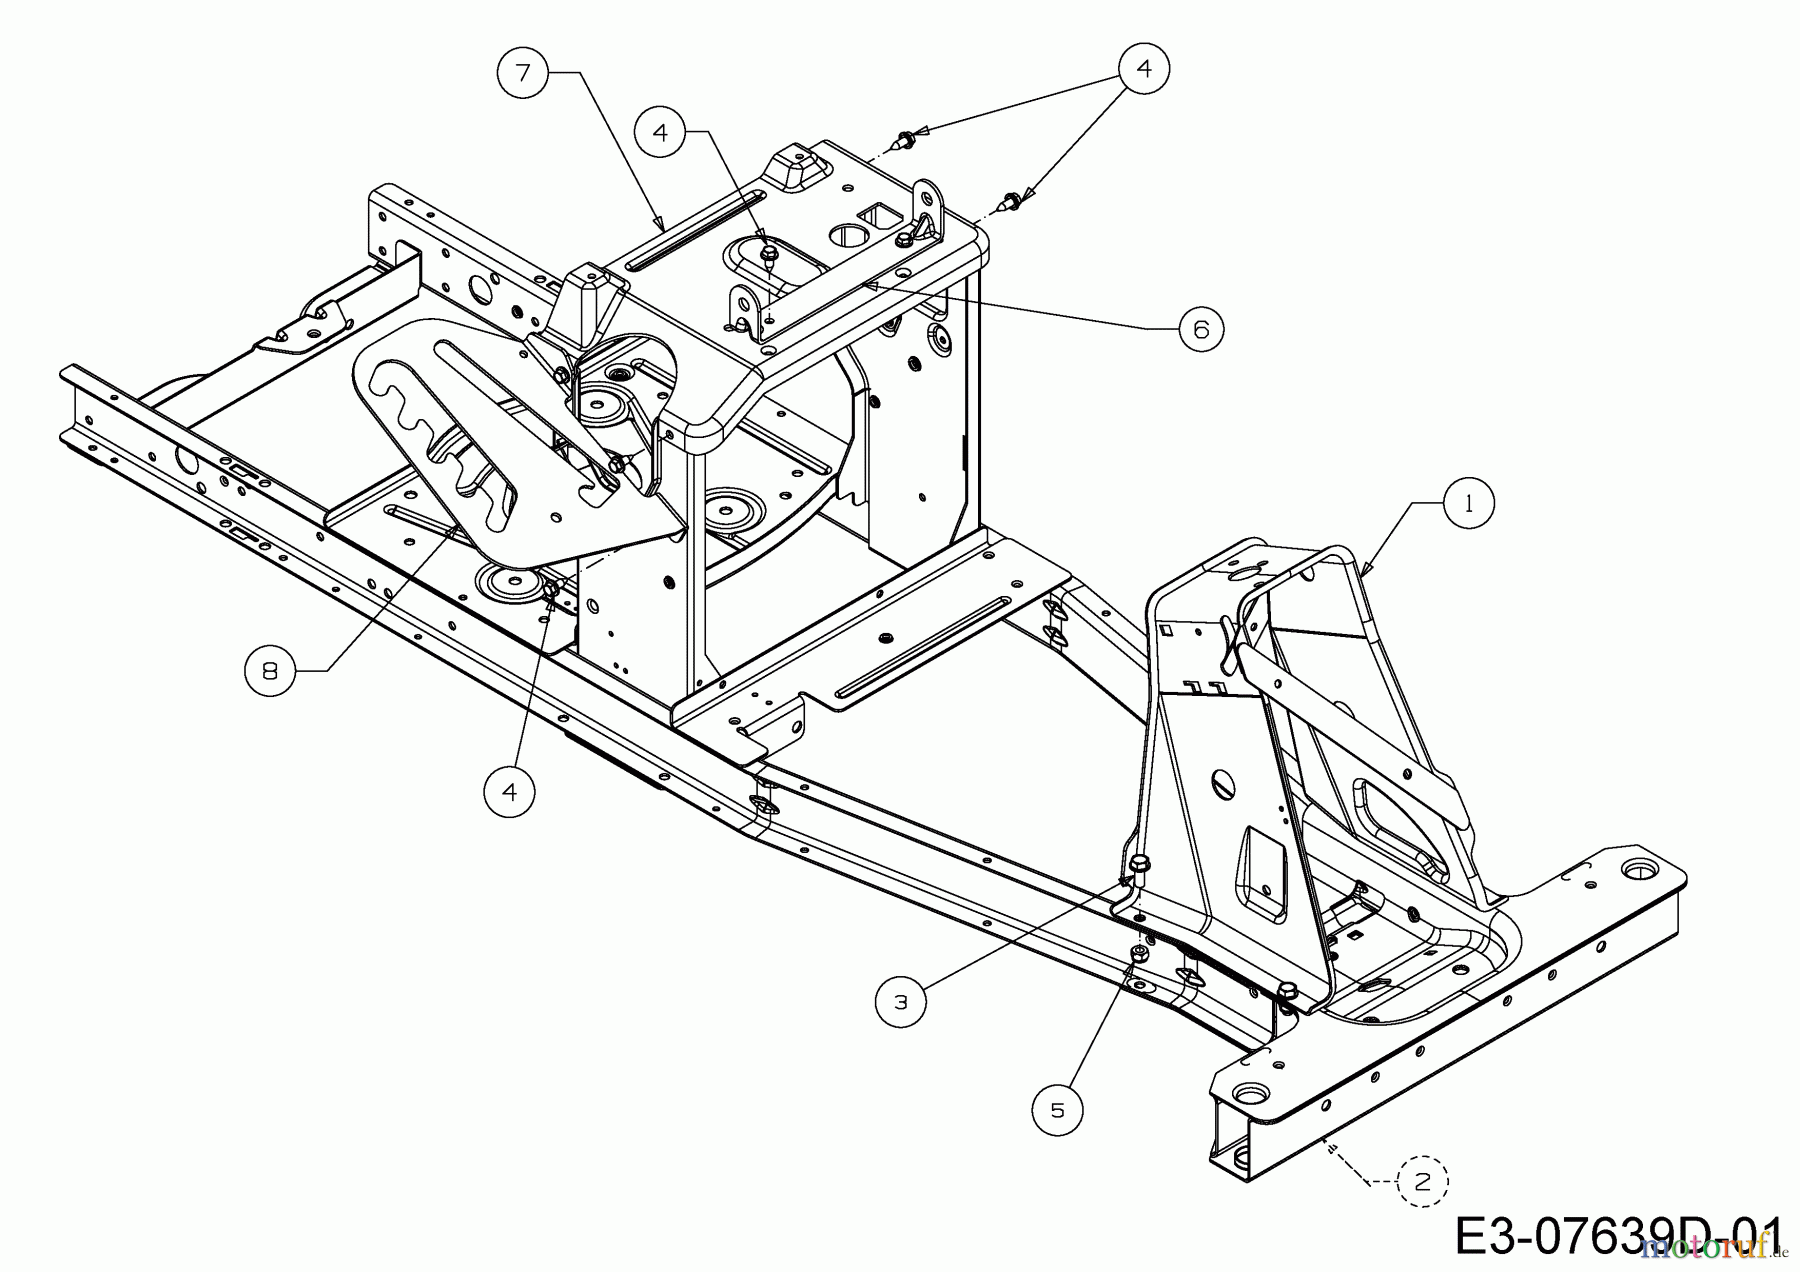  WOLF-Garten Expert Rasentraktoren Expert Scooter Pro 13B226HD650  (2016) Rahmen